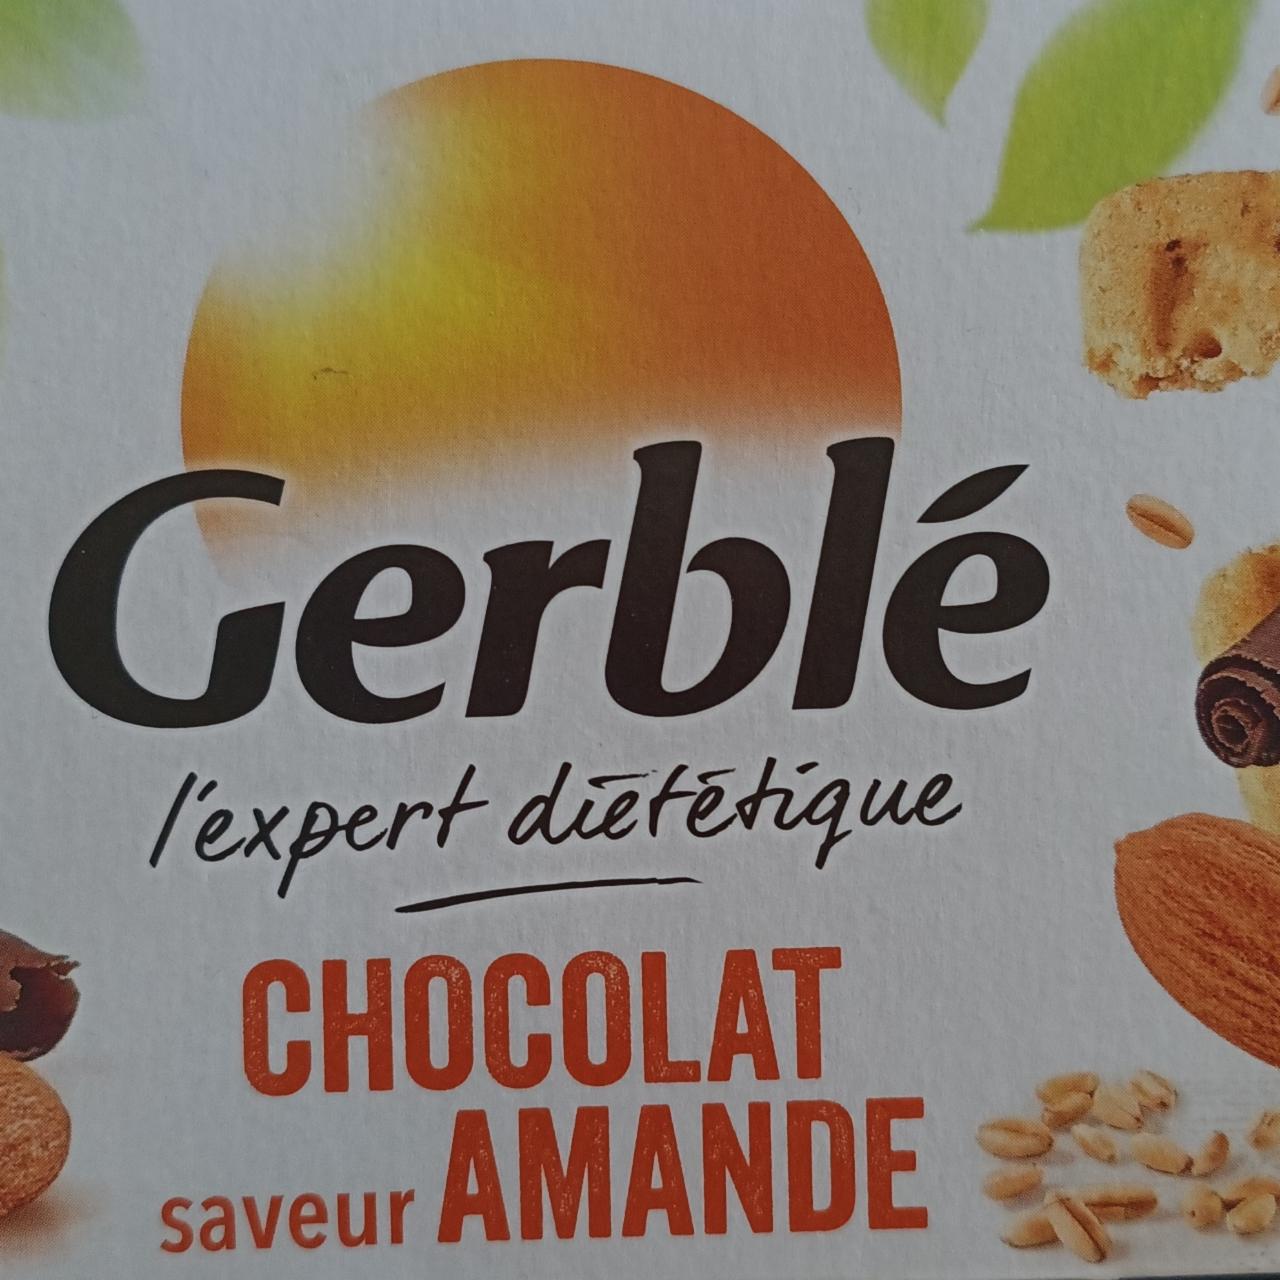 Fotografie - chocolat saveur amande Gerblé